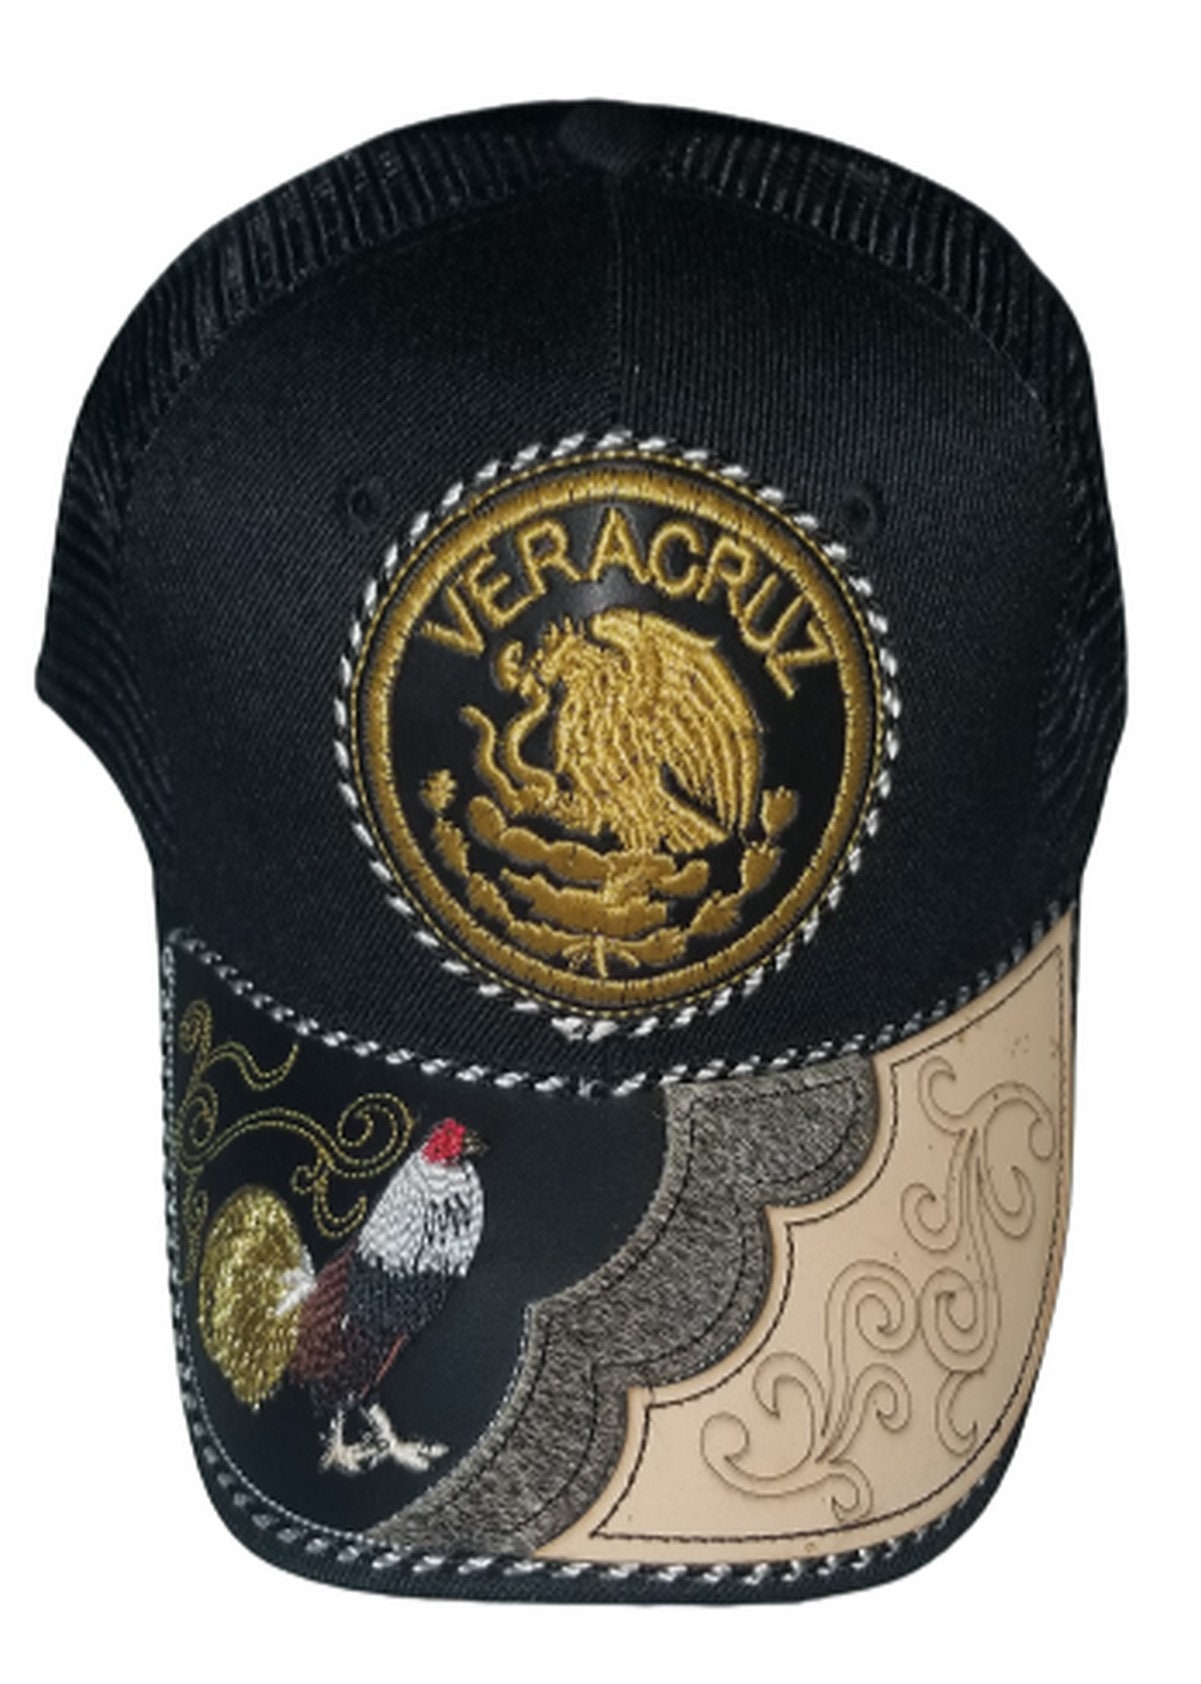 Veracruz Gorra Charra Premium Handmade Hat Cap